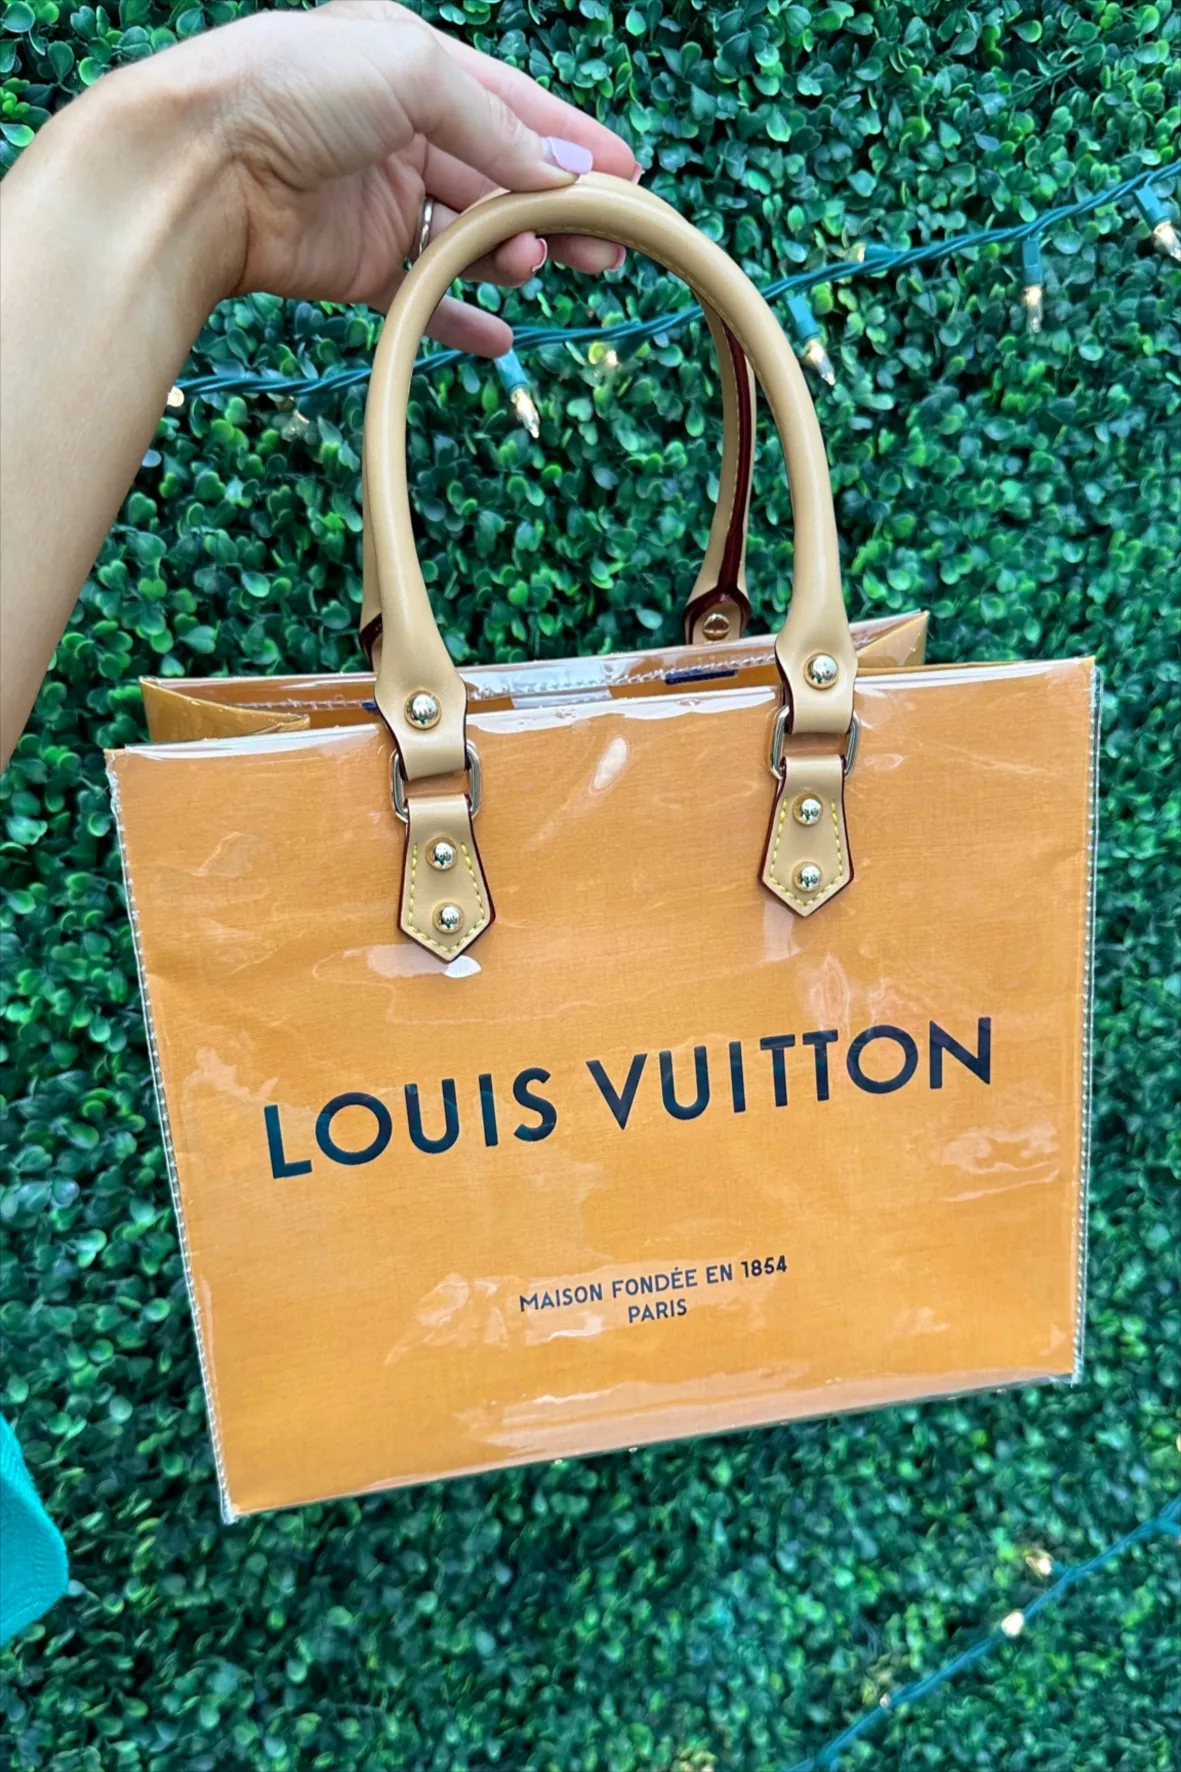 Can I DIY Louis Vuitton?